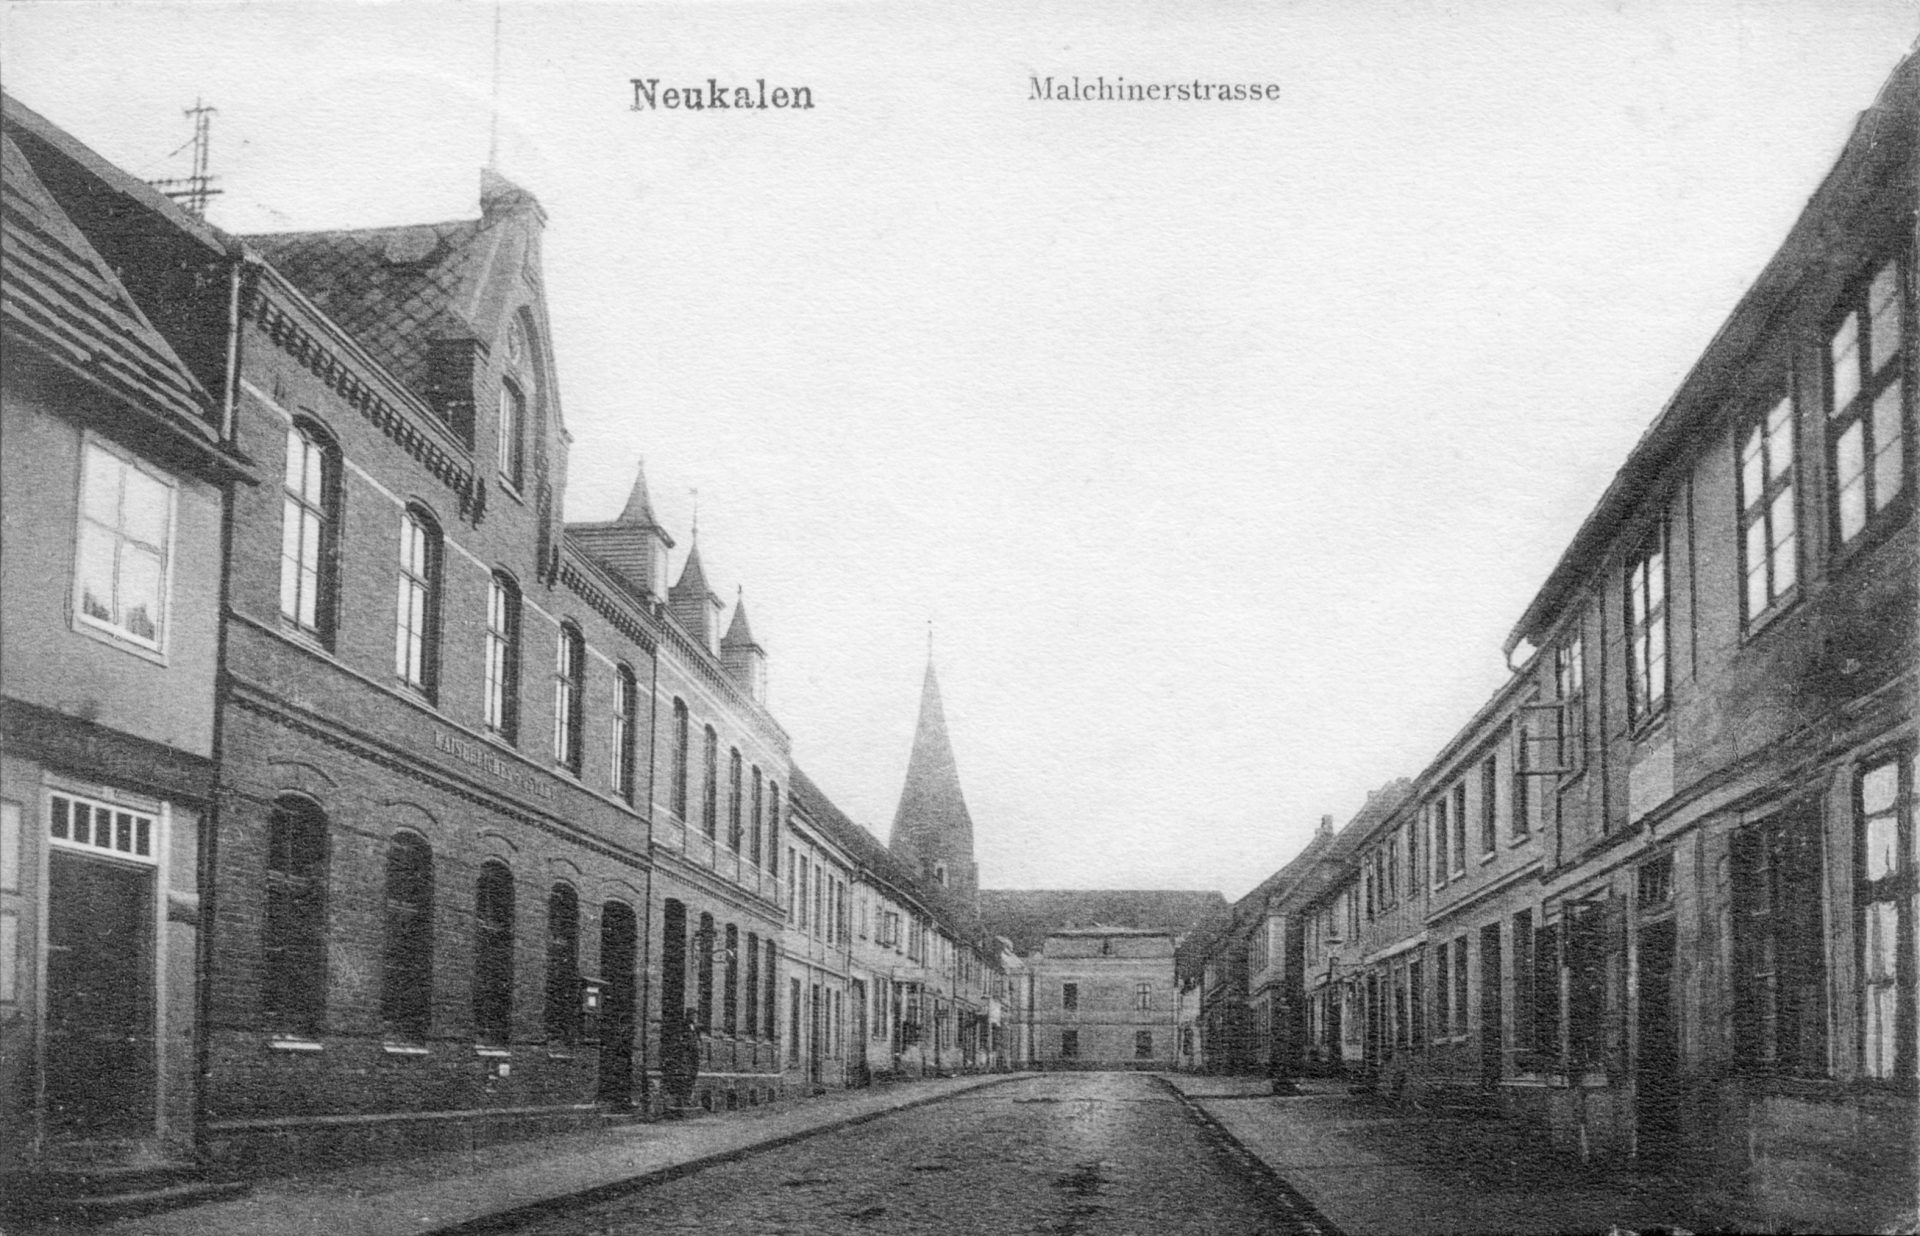 Ansichtskarte der „Malchinerstraße“, 1908 oder früher.